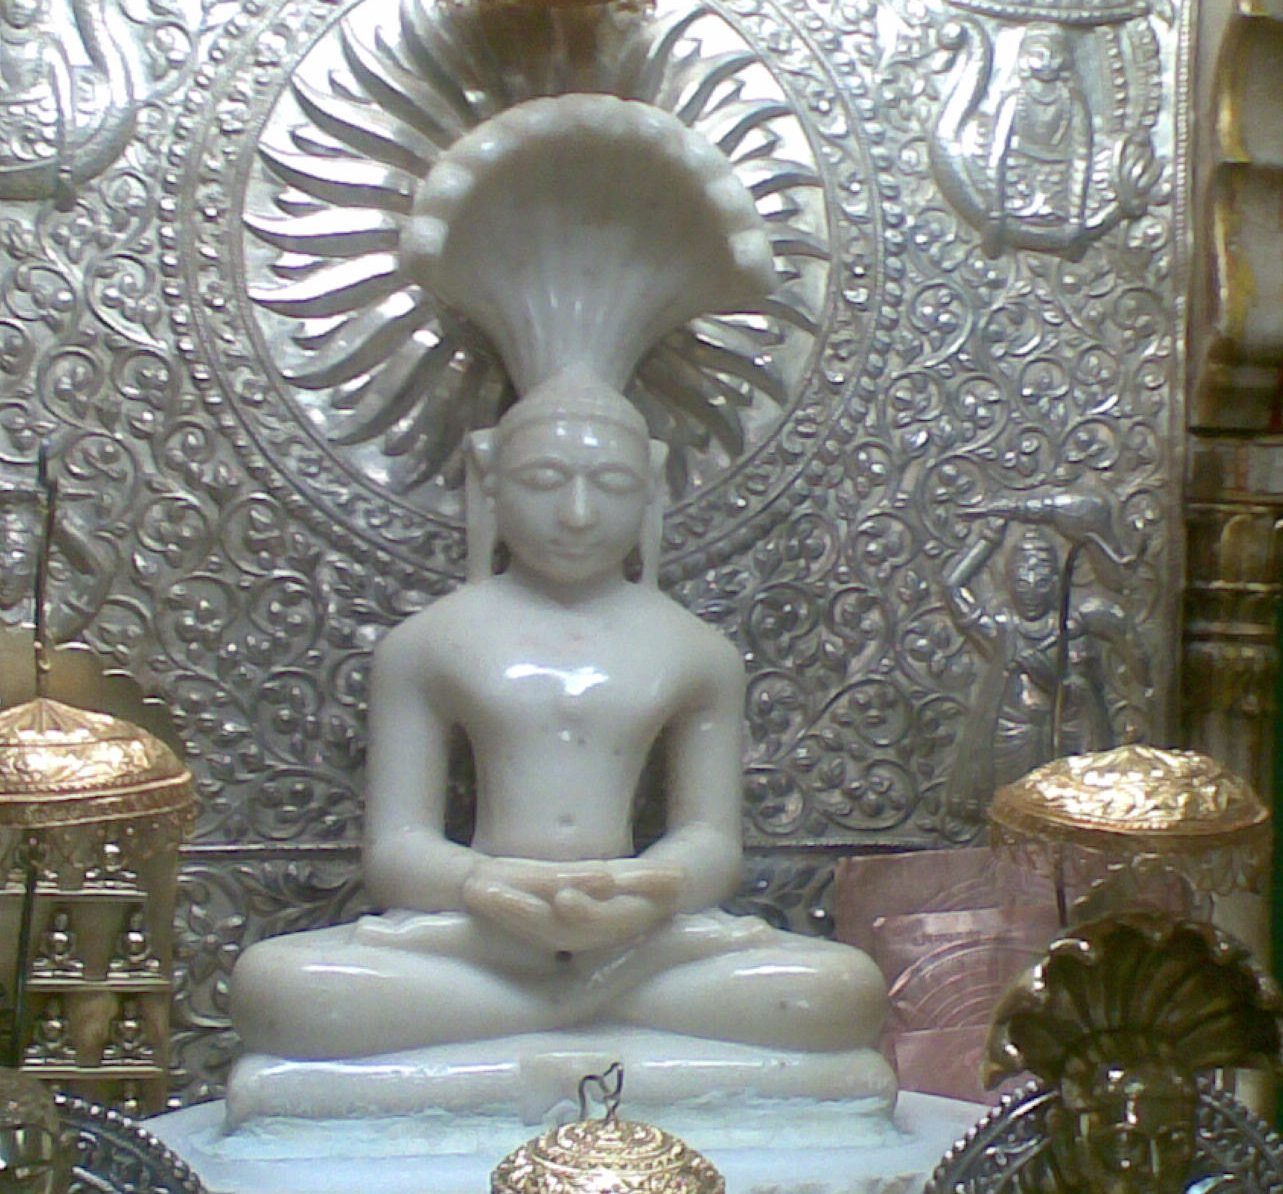 Shri 1008 Bhagwan Parshvnath At Digamber Jain Atishya - Vahelna Jain Mandir , HD Wallpaper & Backgrounds